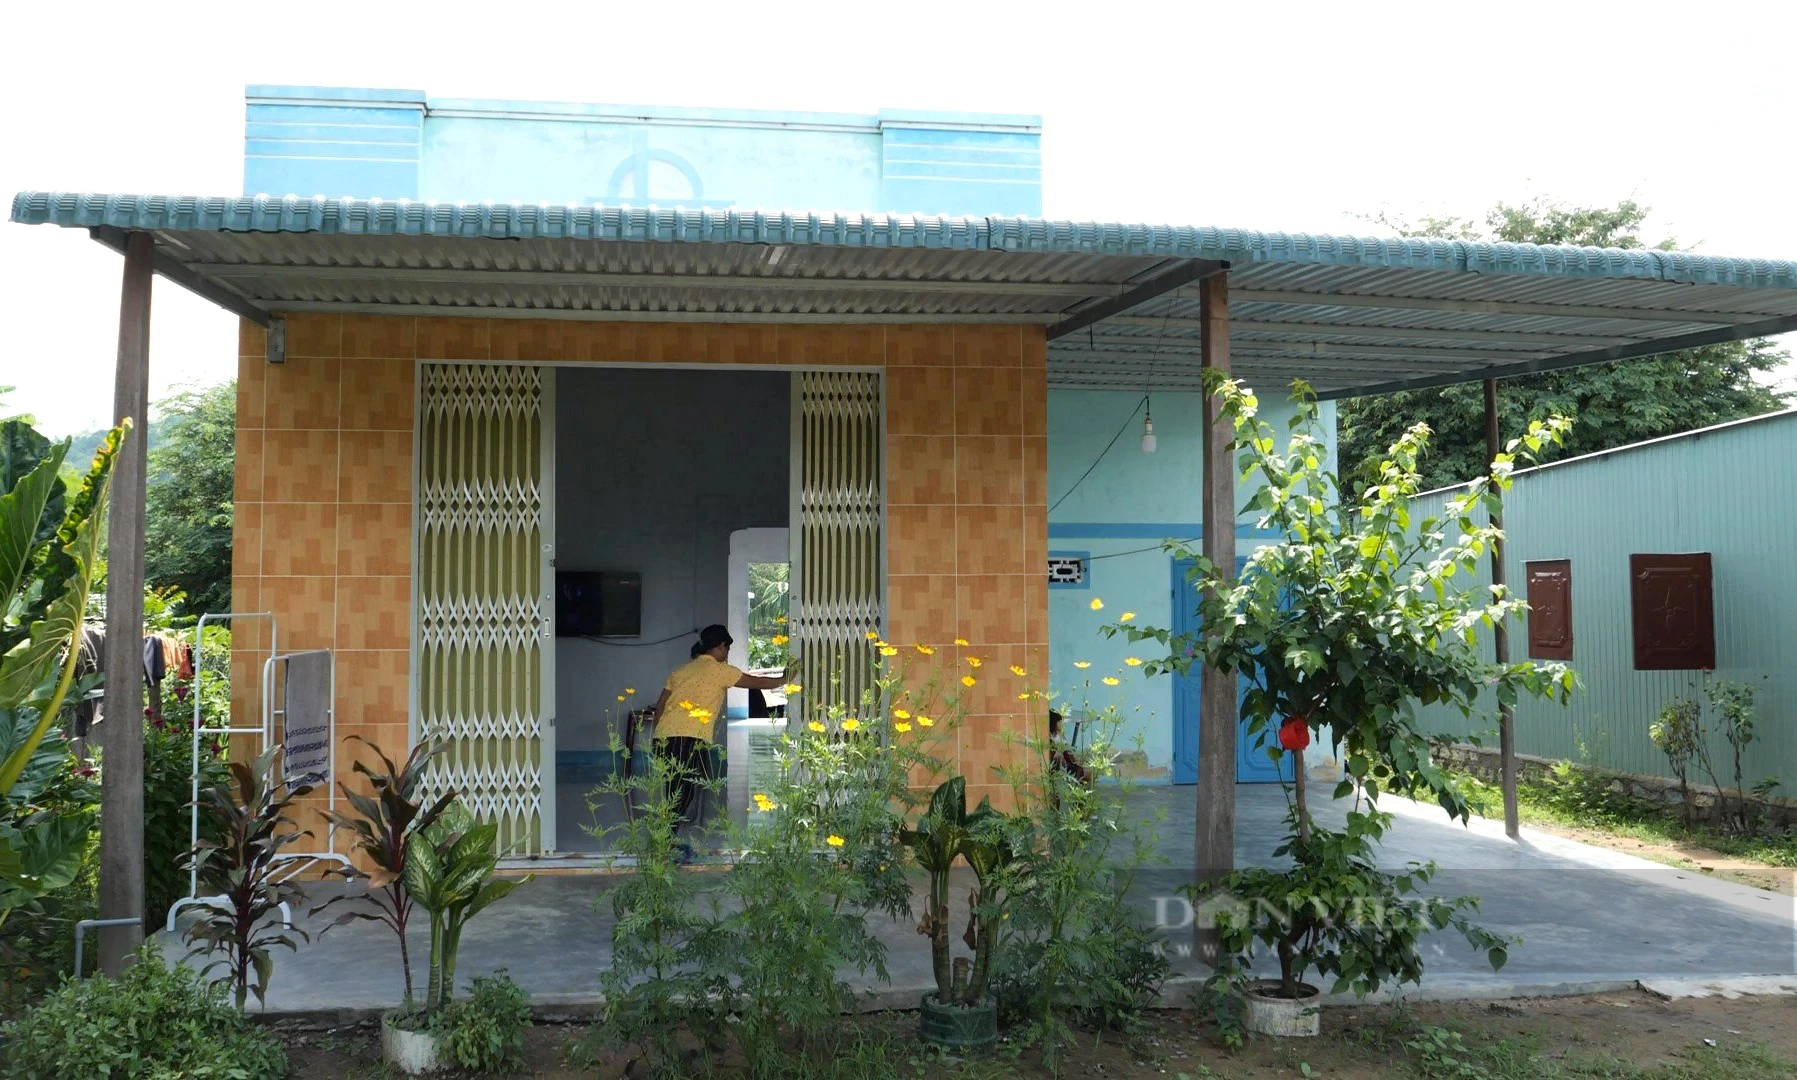 Đồng bào Raglai ở huyện miền núi Bác Ái tỉnh Ninh Thuận đi nước ngoài làm ăn để thoát nghèo - Ảnh 3.